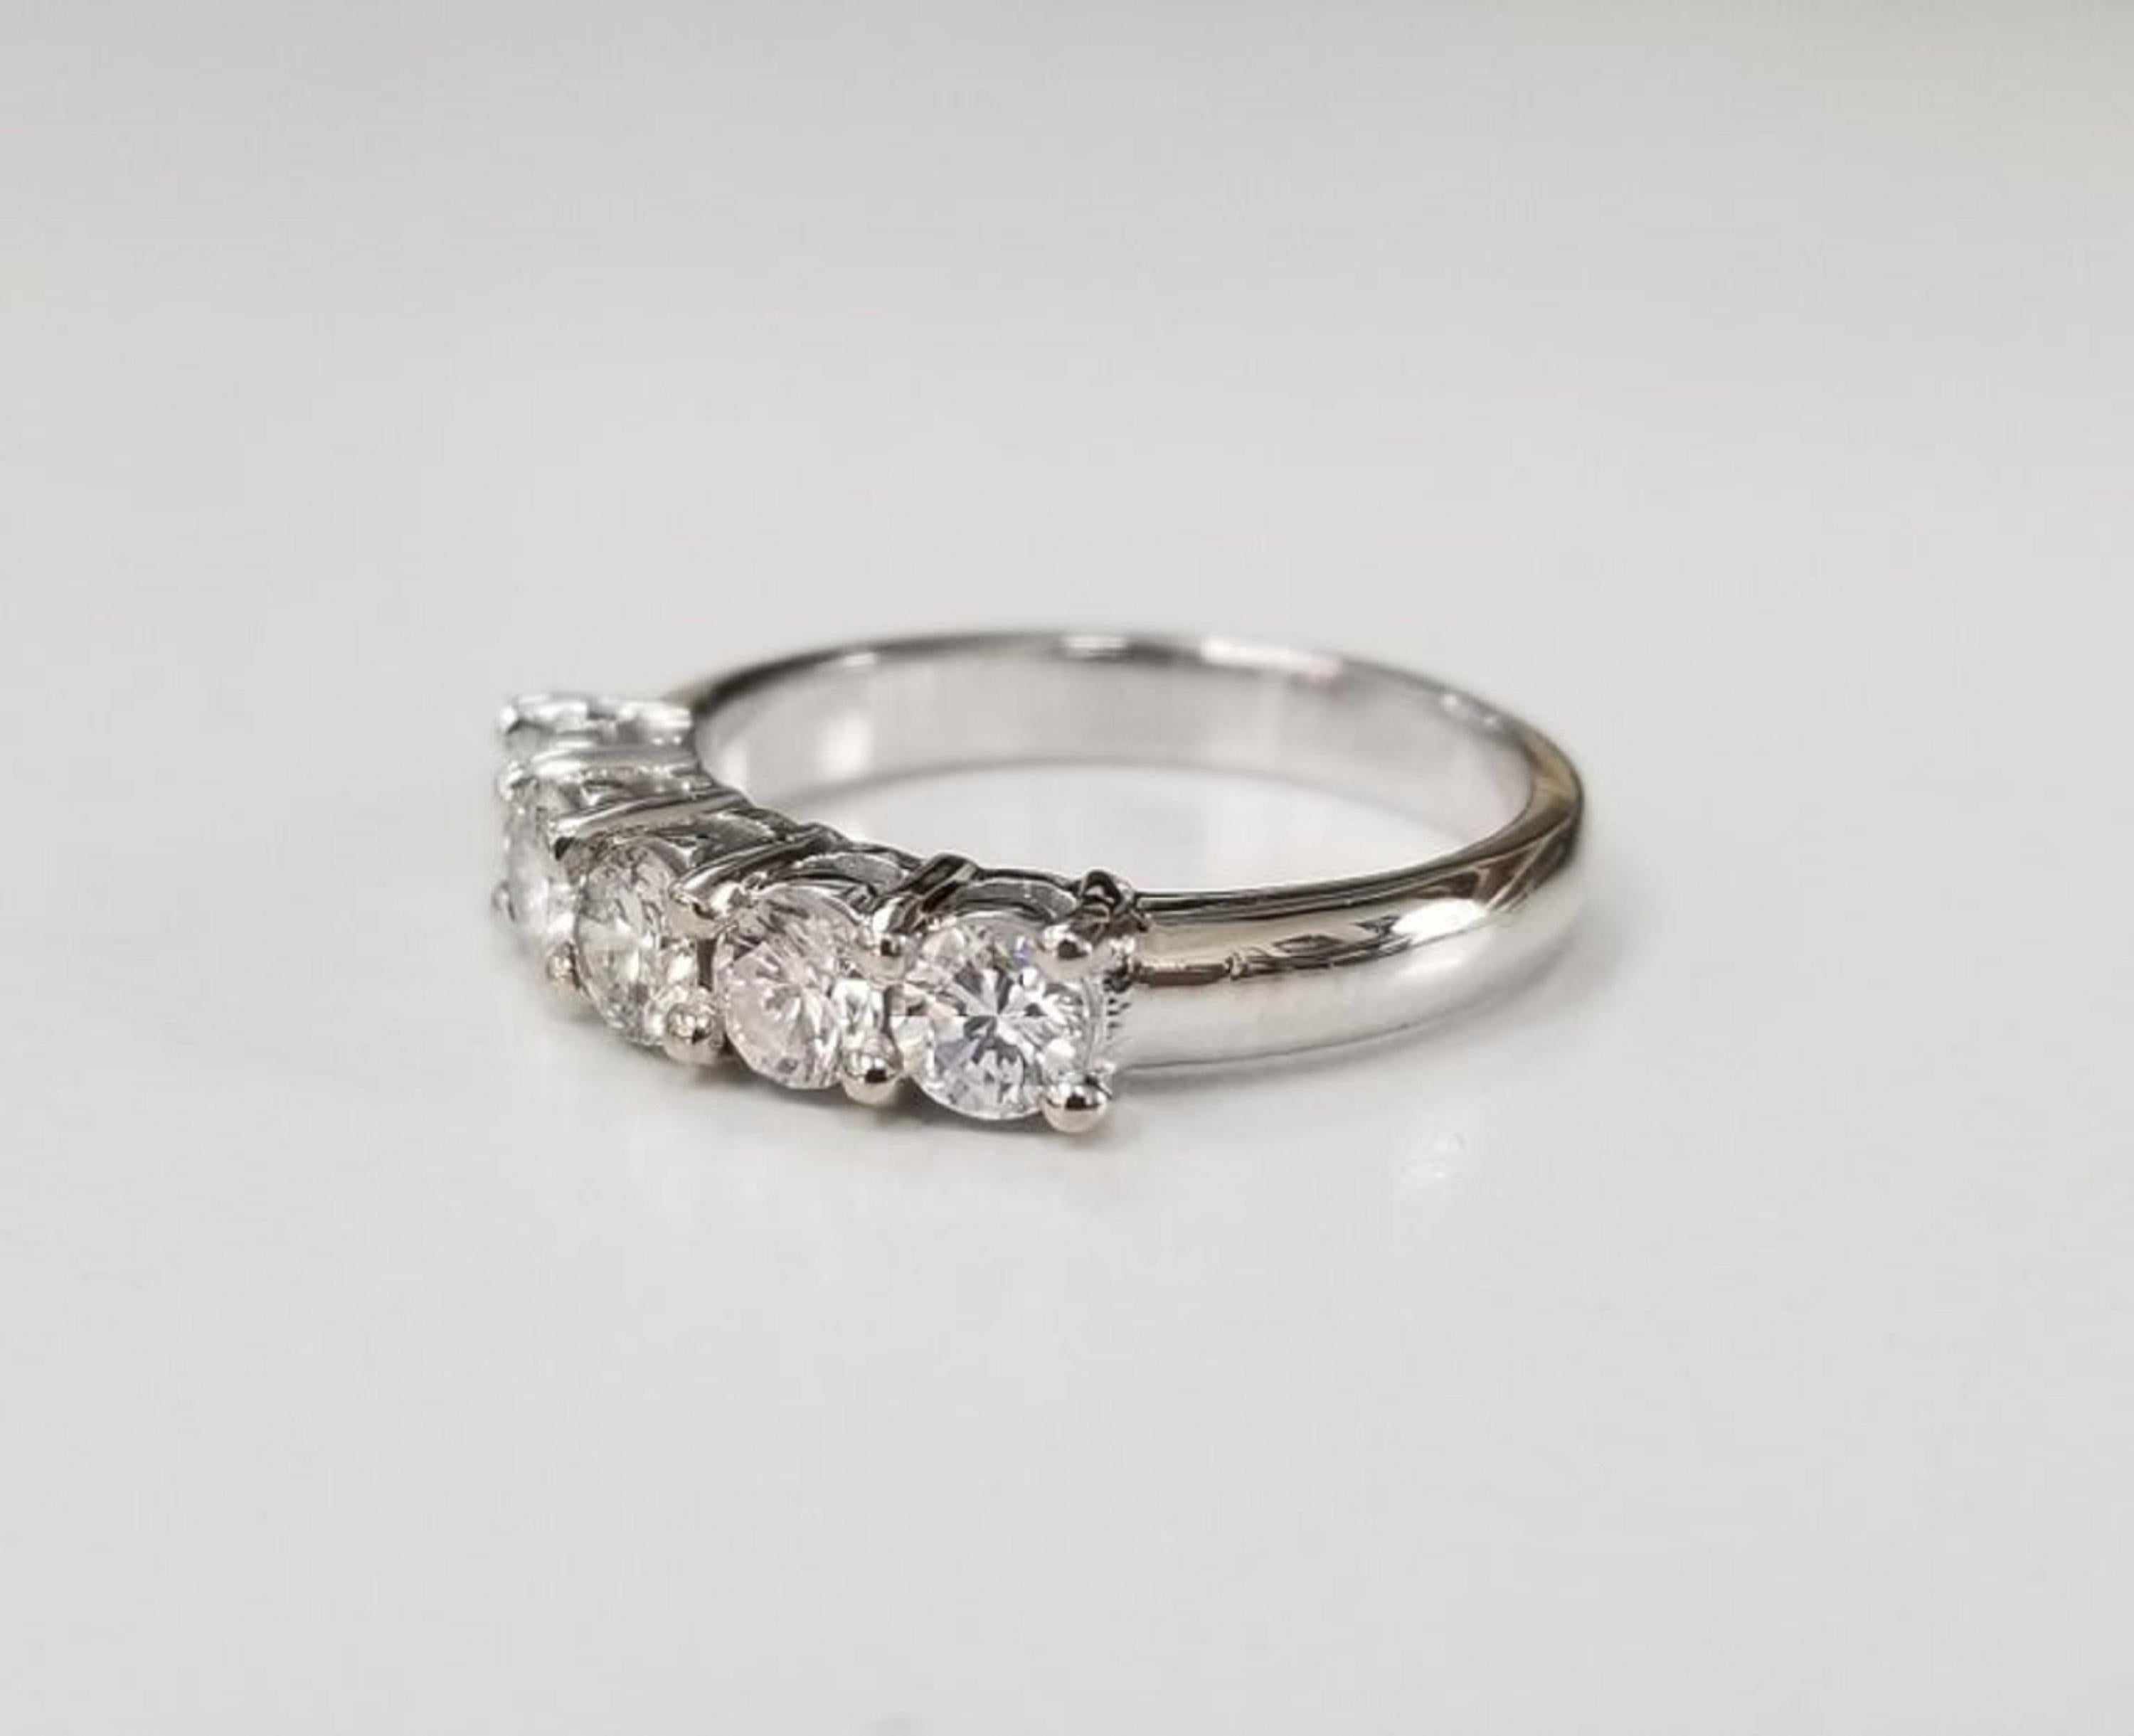 14 karat 5 stone diamond ring weighing .95pts. color 